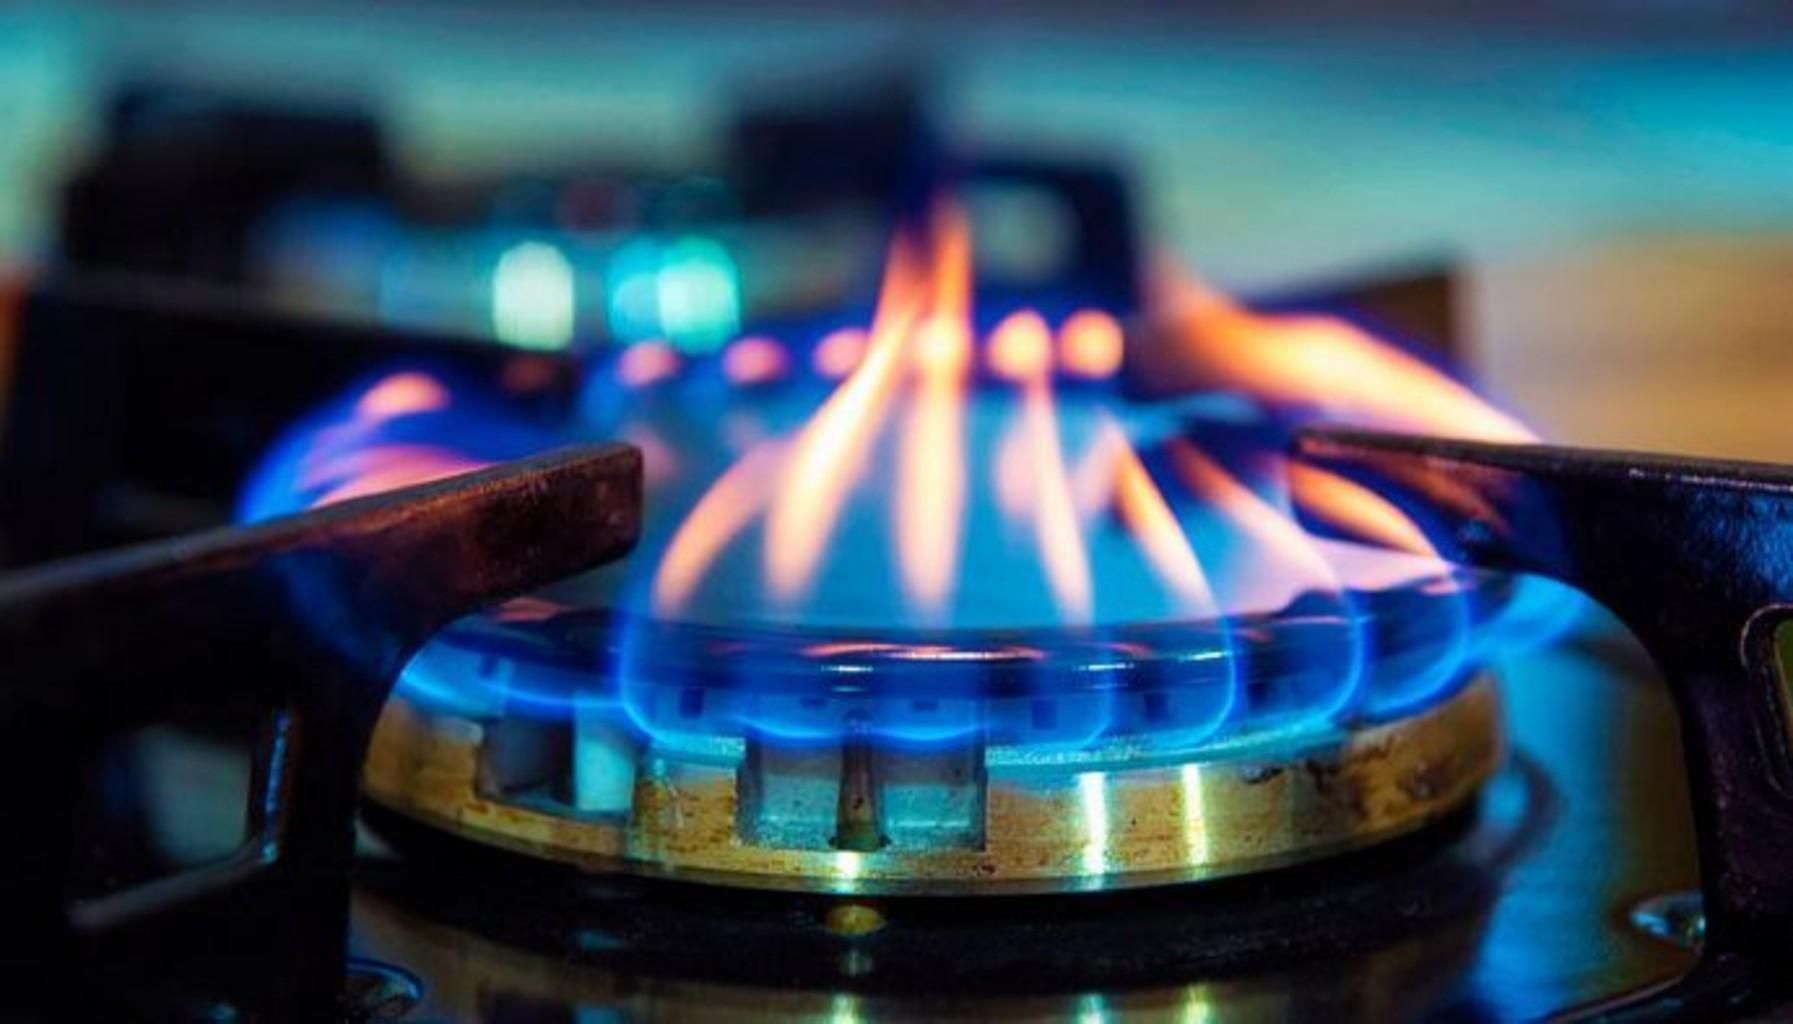 Ринок газу 2020 в Україні: зміна постачальника газу та тарифу